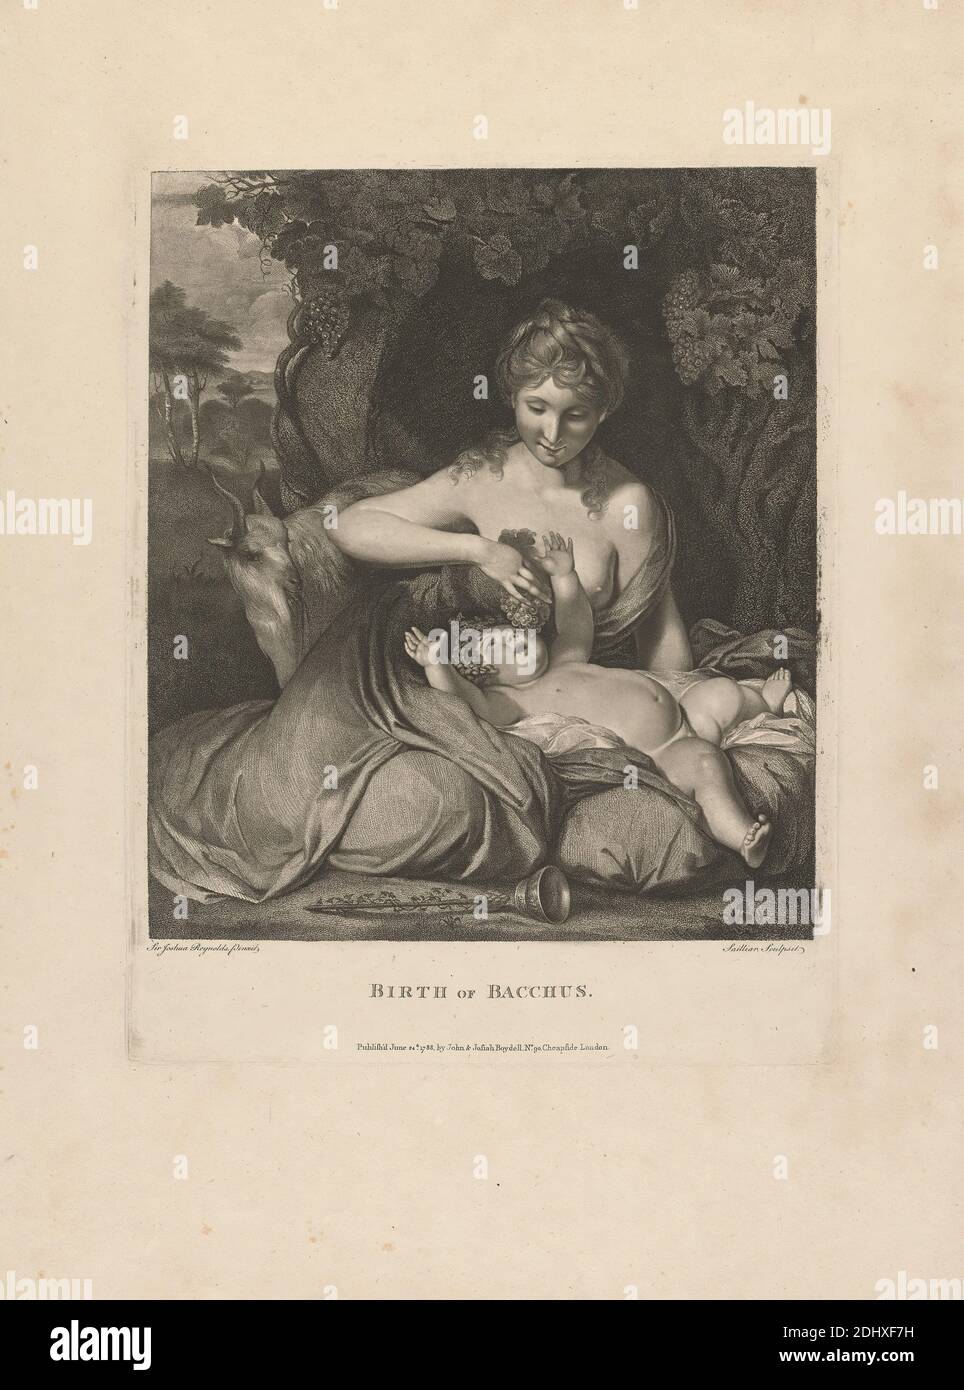 Nascita di Bacchus, dopo Sir Joshua Reynolds RA, 1723–1792, British, Louis Sailliar, 1748–1795, francese, 1788, incisione a stipsi su carta spessa, moderatamente testurizzata, beige, wove, foglio: 20 5/8 × 15 1/2 pollici (52.4 × 39.4 cm), piatto: 14 1/8 × 11 pollici (35.9 × 27.9 cm) e immagine: 12 × 10 3/8 pollici (30.5 × 26.4 cm), dio, uva, viti Foto Stock